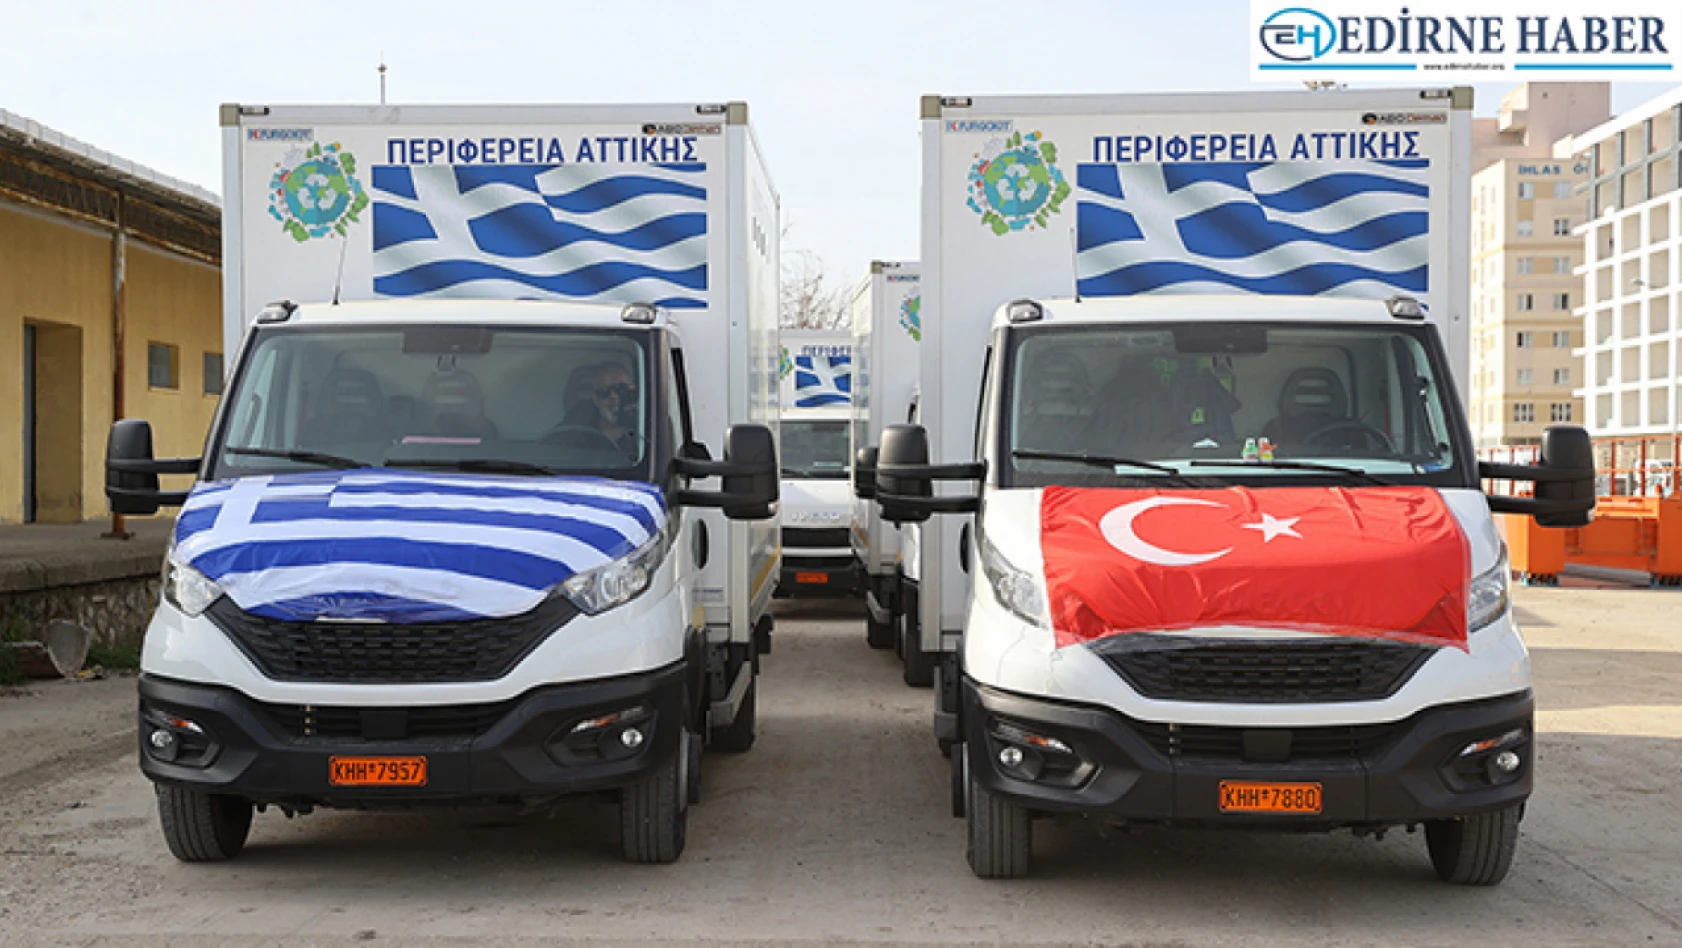 Yunanistan'ın deprem bölgesine gönderdiği 250 ton yardım malzemesi Edirne'ye ulaştı